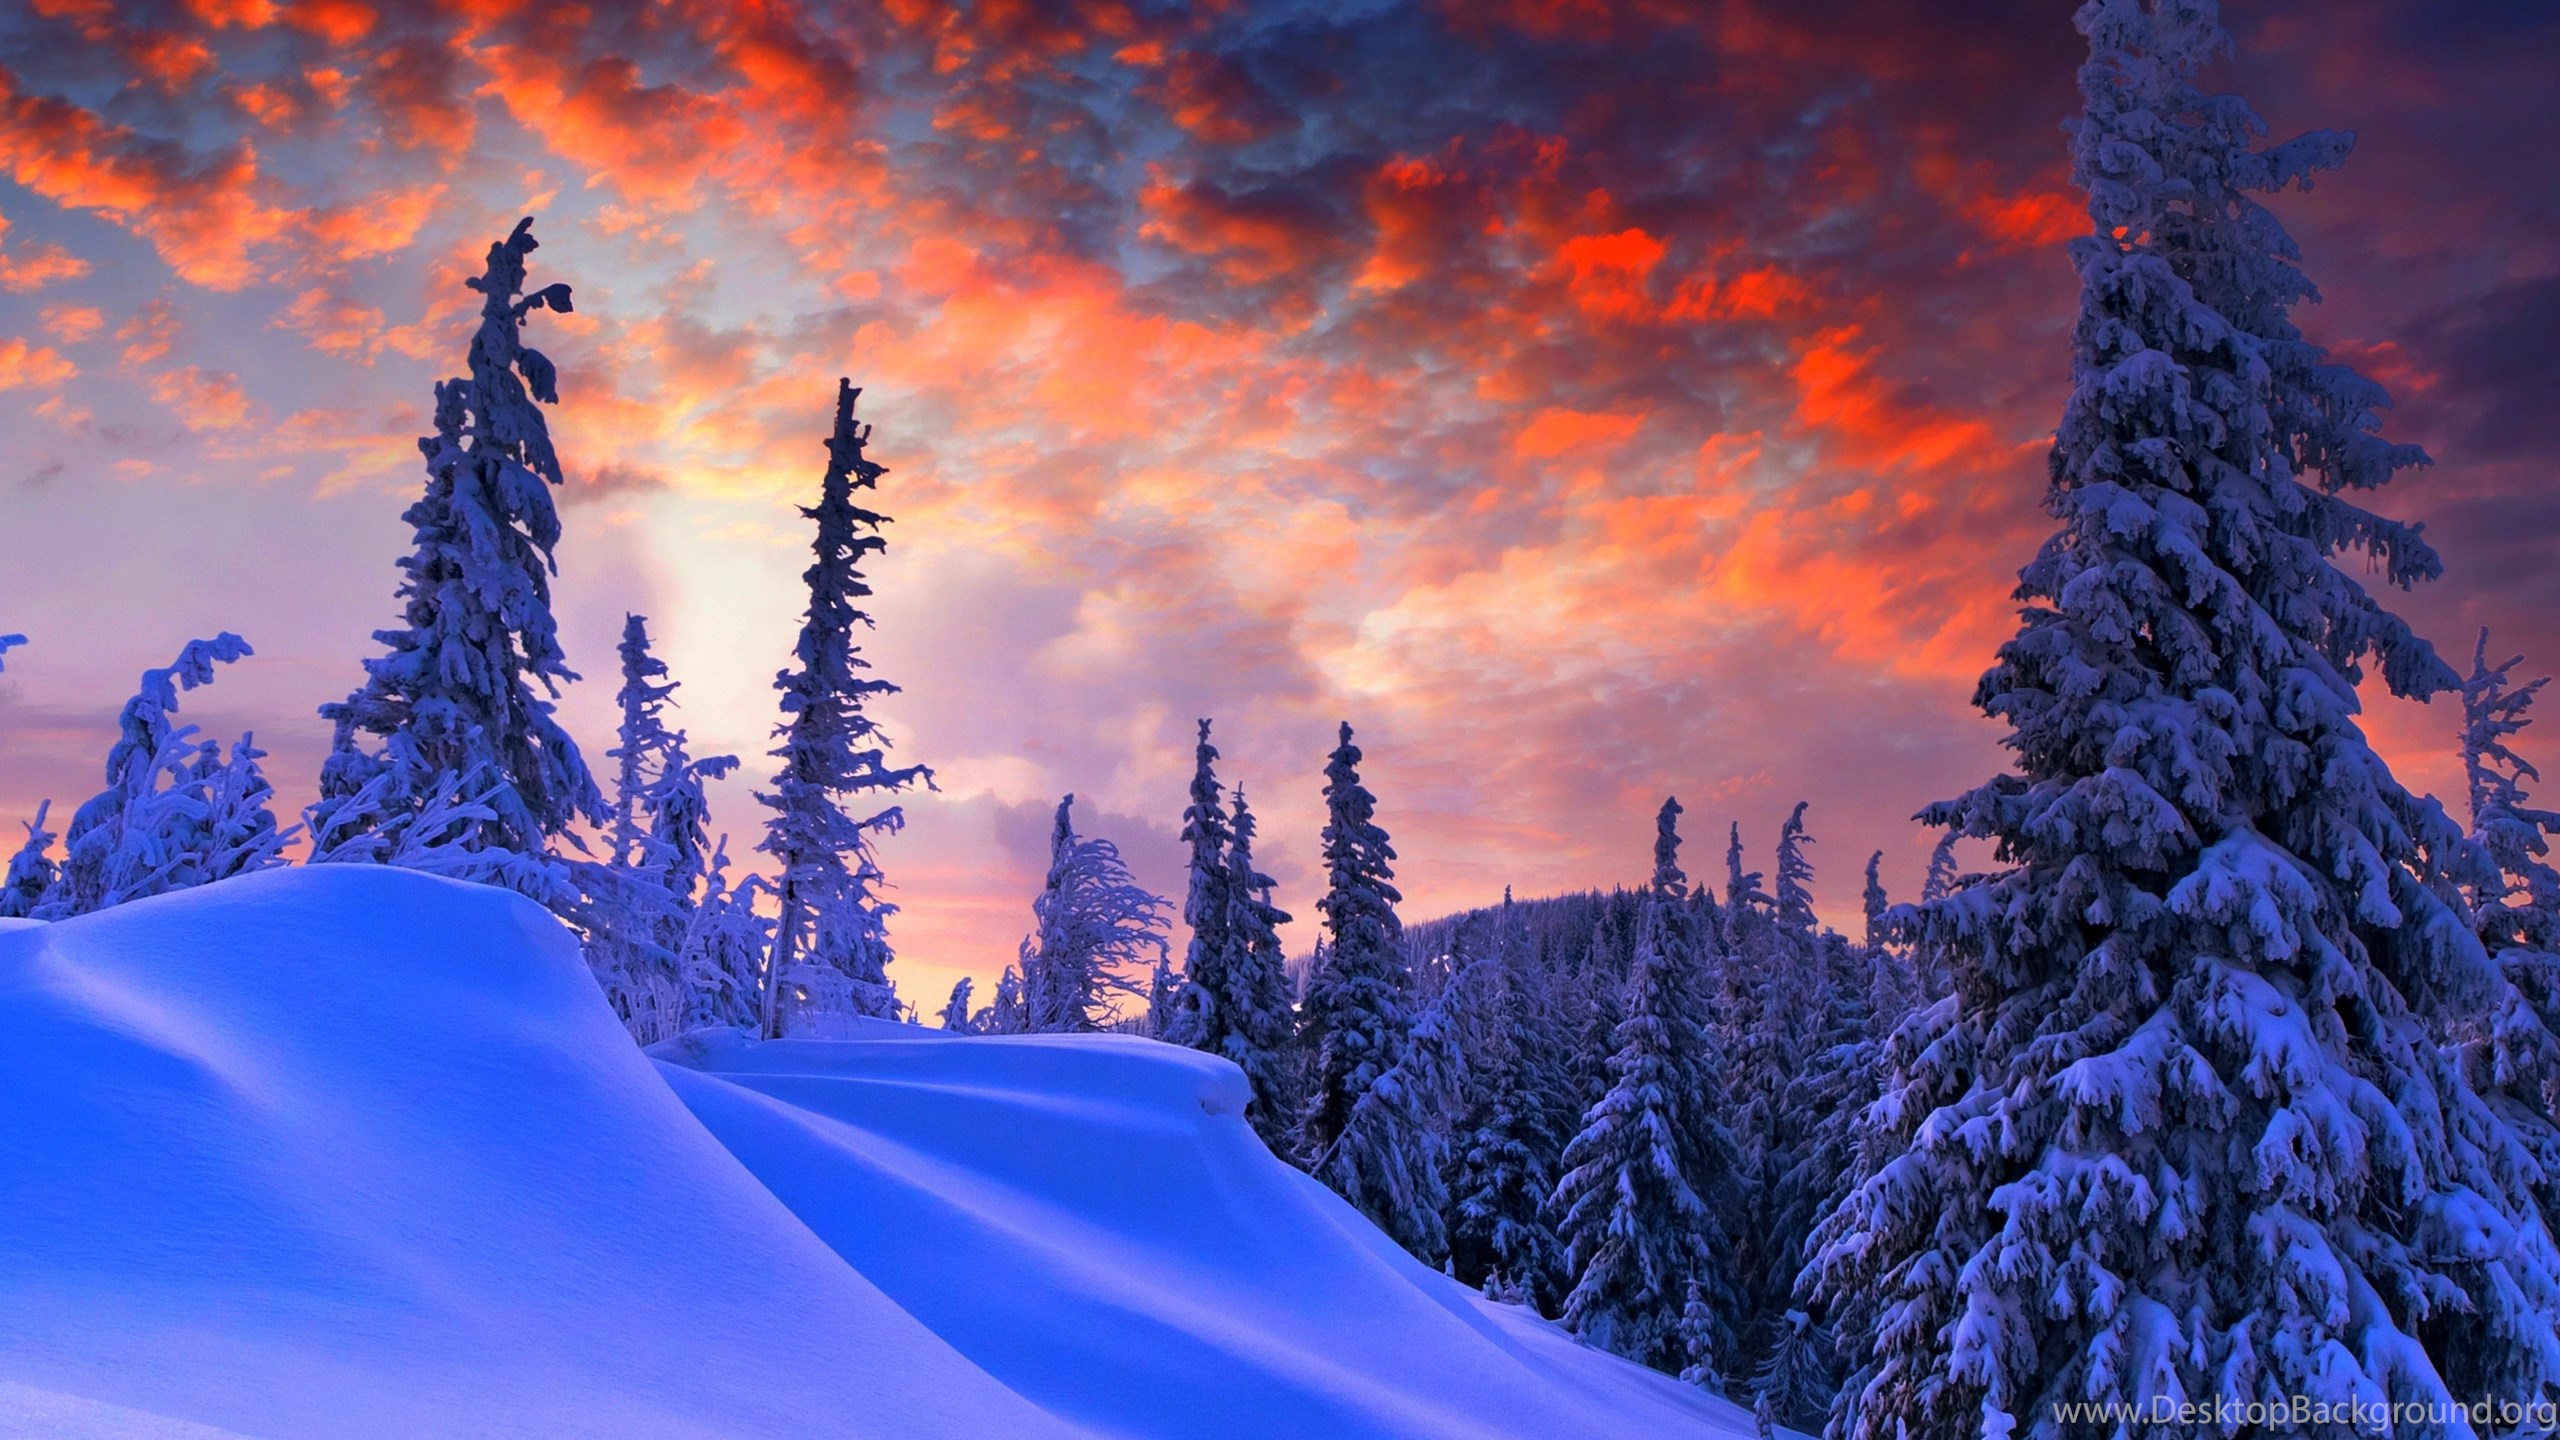 クリスマス壁紙フルhd,空,自然,雪,冬,青い